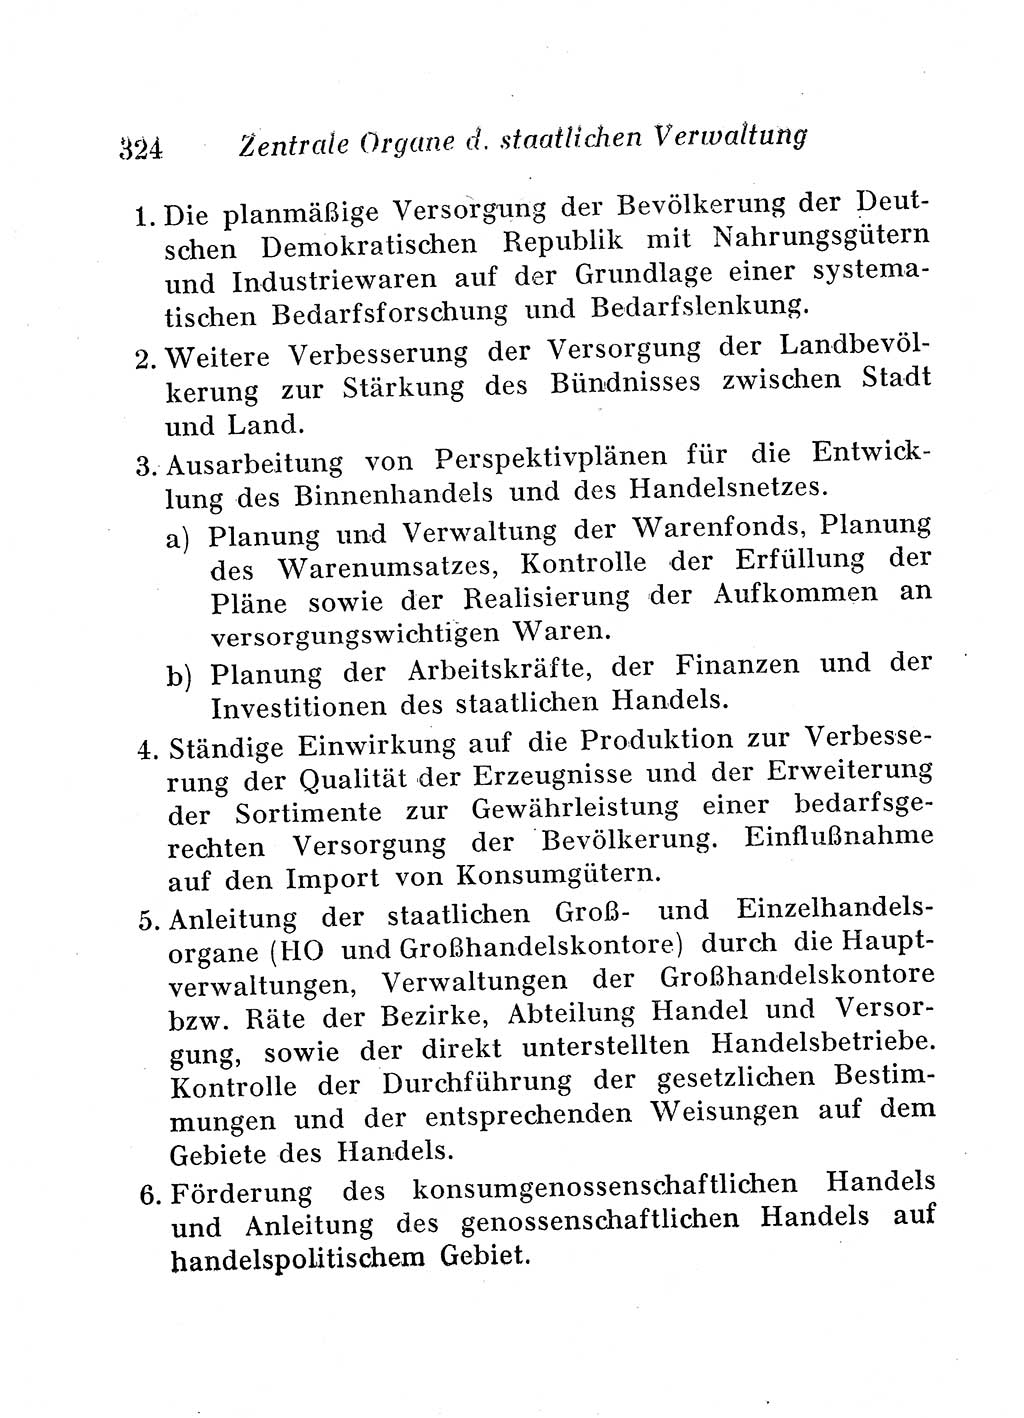 Staats- und verwaltungsrechtliche Gesetze der Deutschen Demokratischen Republik (DDR) 1958, Seite 324 (StVerwR Ges. DDR 1958, S. 324)